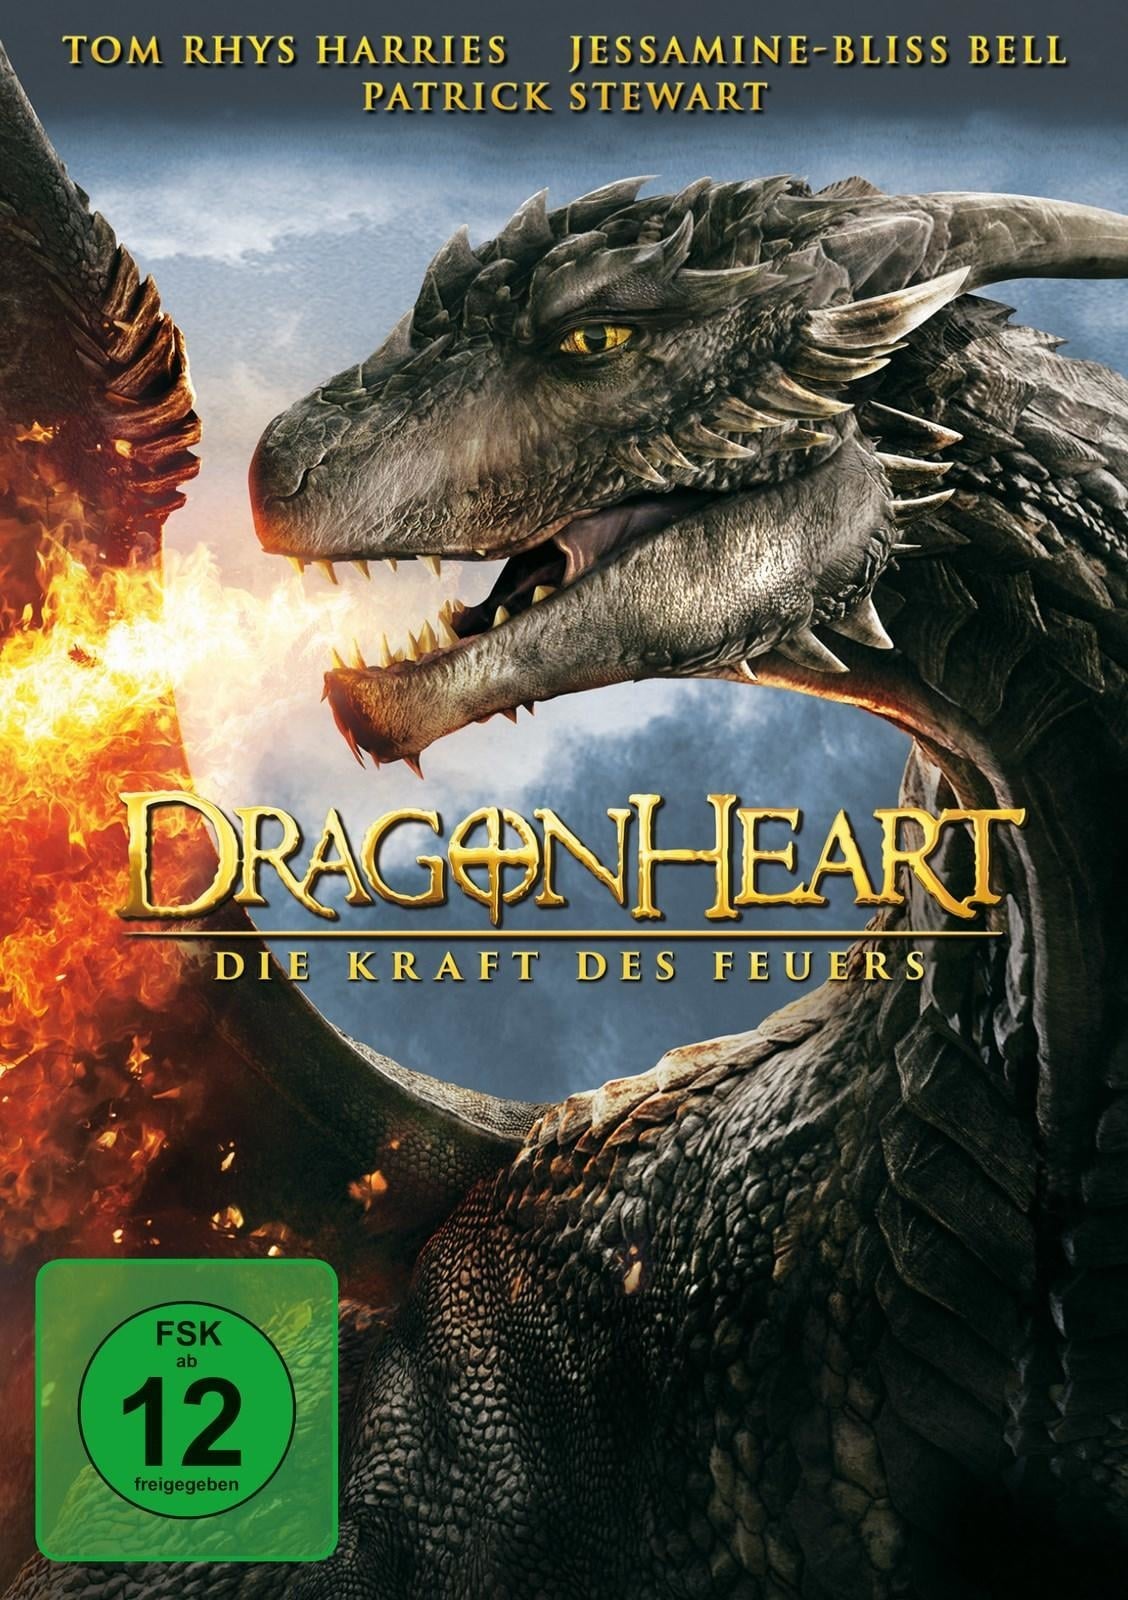 Plakat von "Dragonheart - Die Kraft des Feuers"